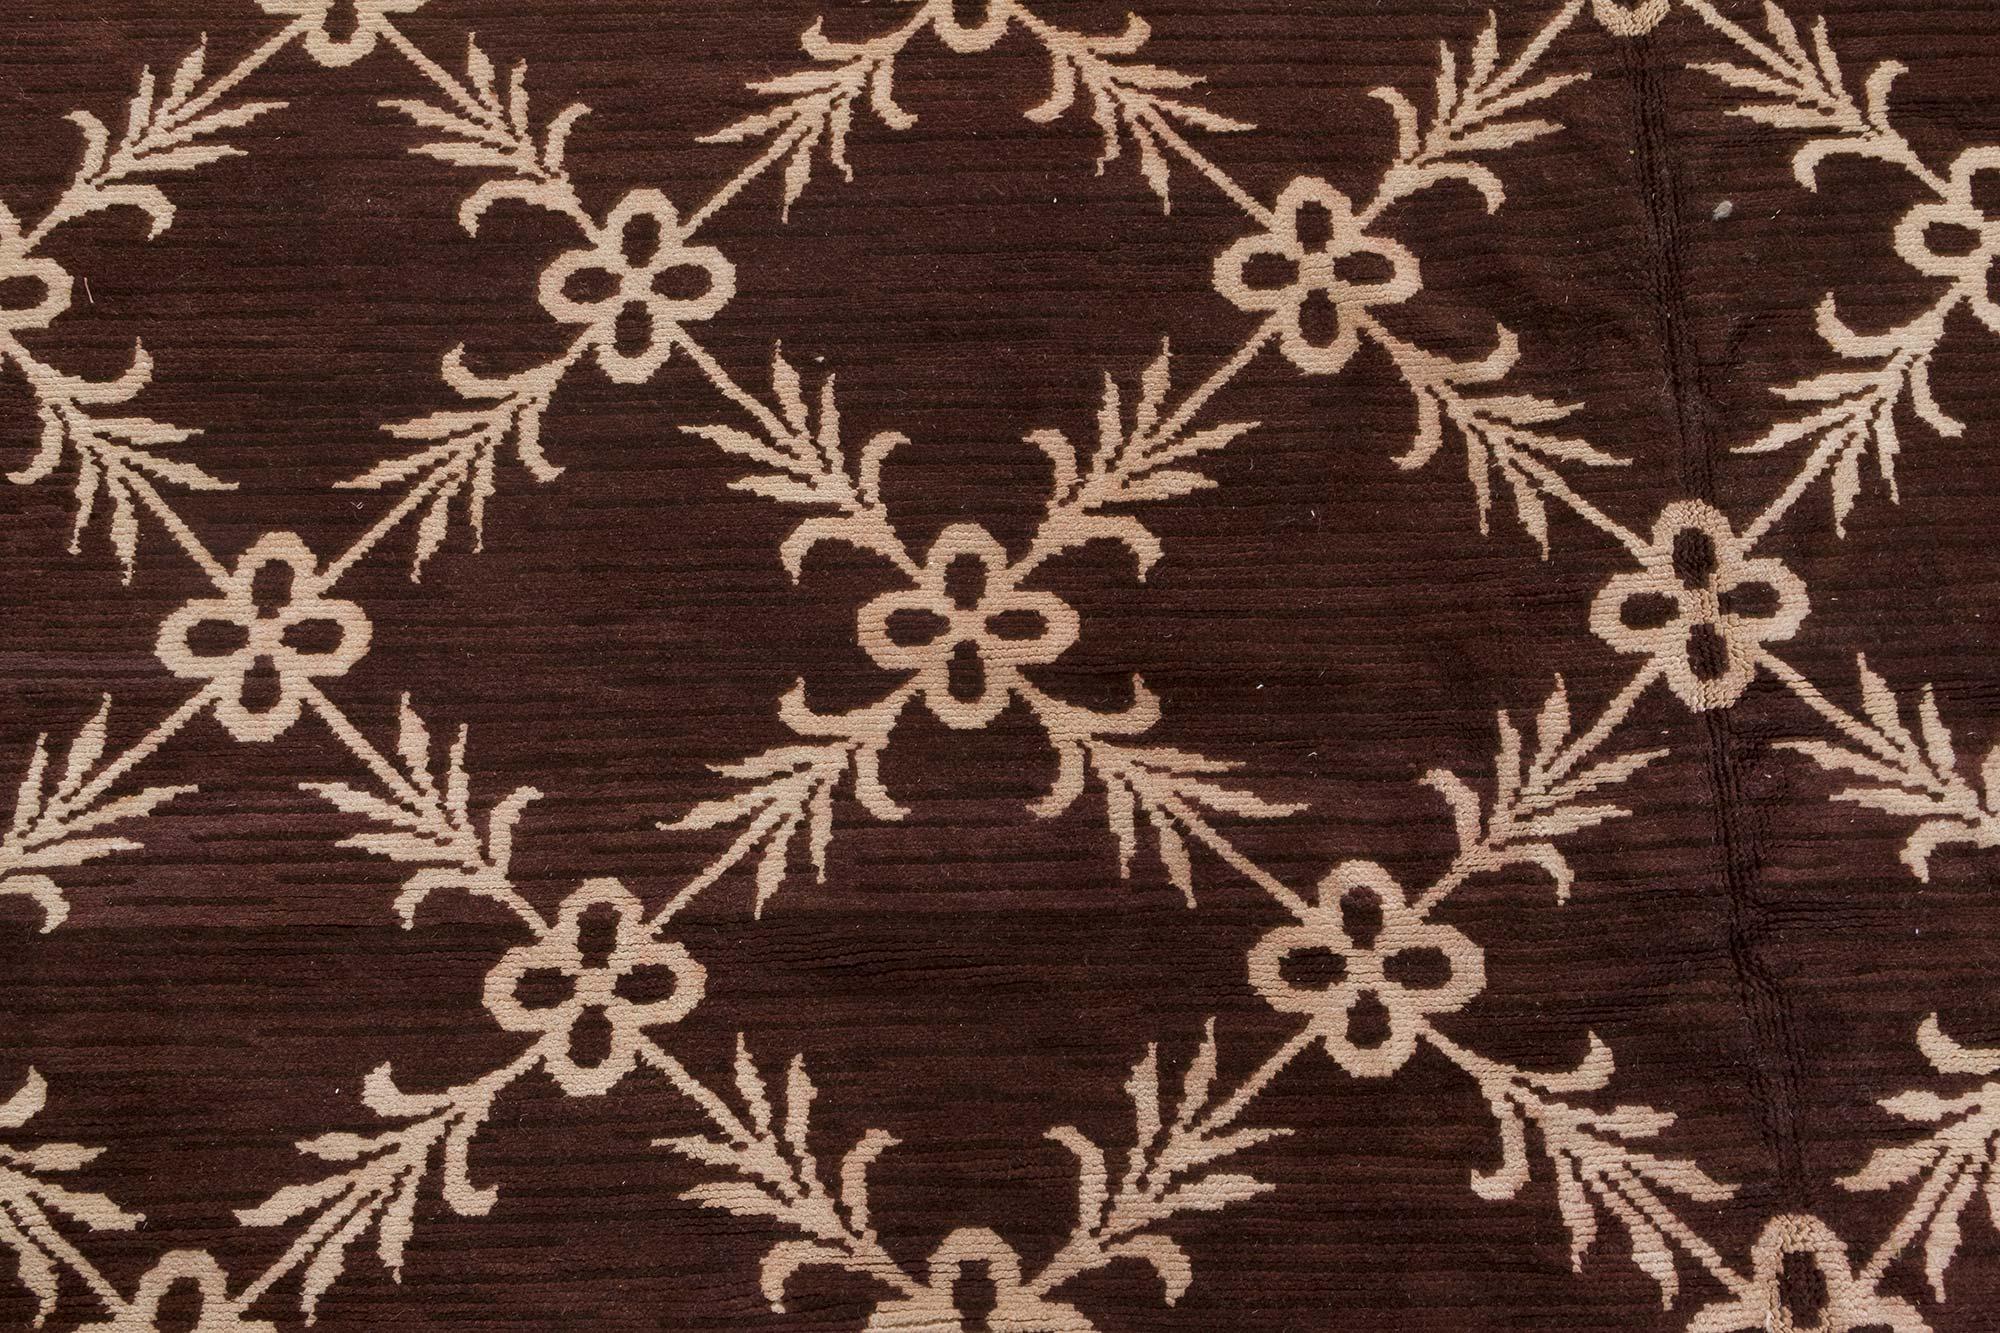 Tapis vintage en laine tissée à la main brun et ivoire de Botanic Chocolat d'Espagne
Taille : 353 × 678 cm (11'7